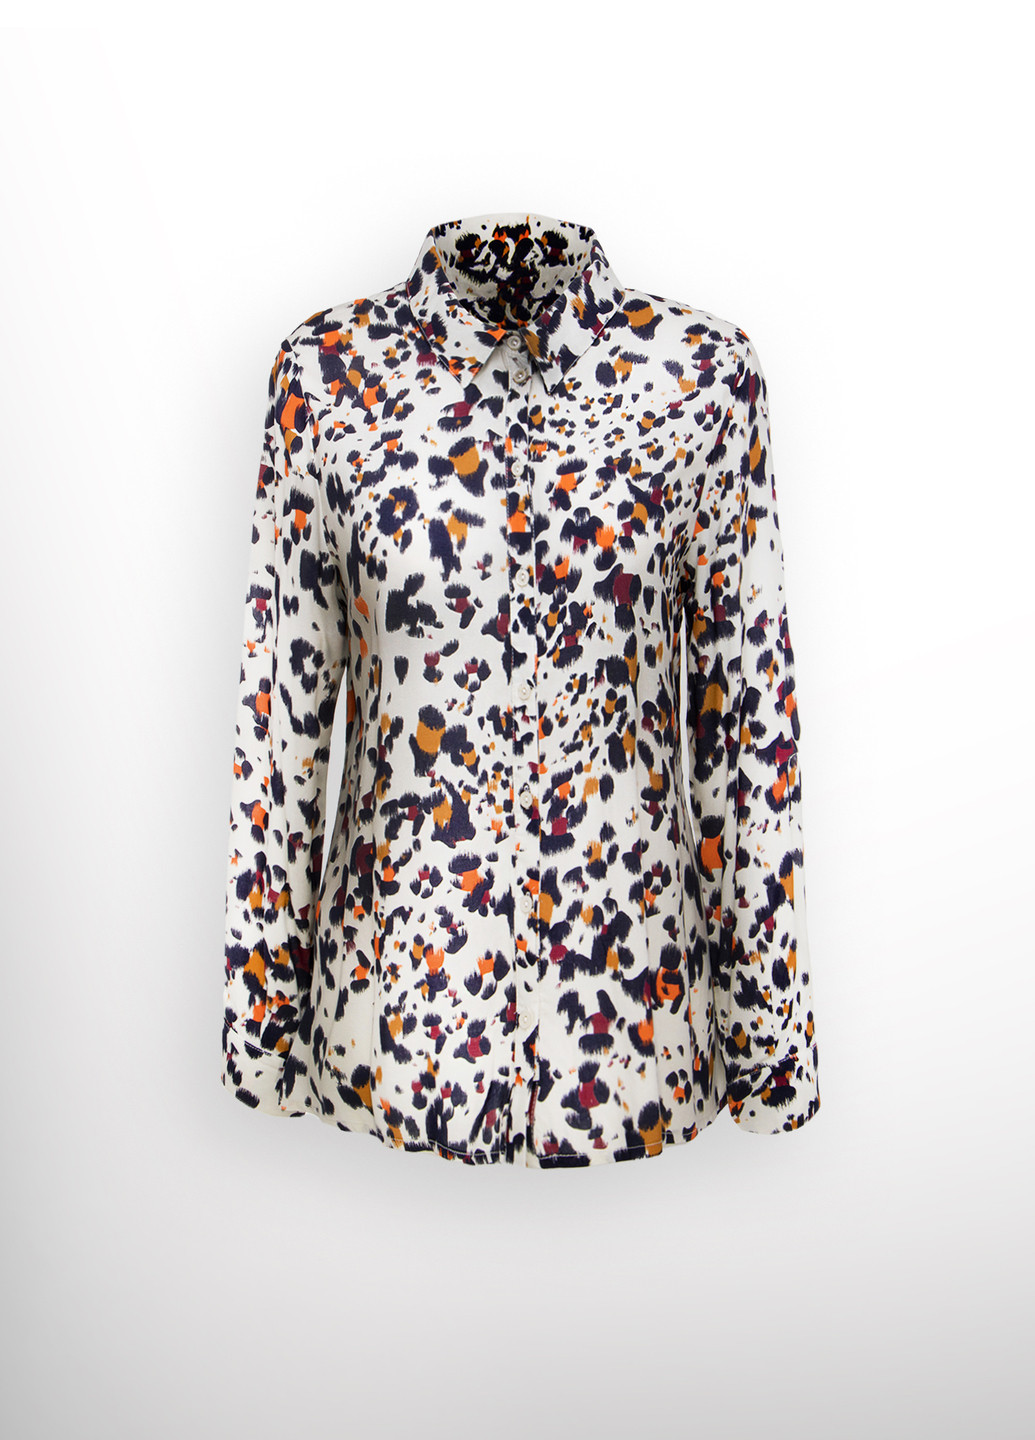 Комбинированная демисезонная блуза-рубашка с леопардовым принтом в63 Luxik